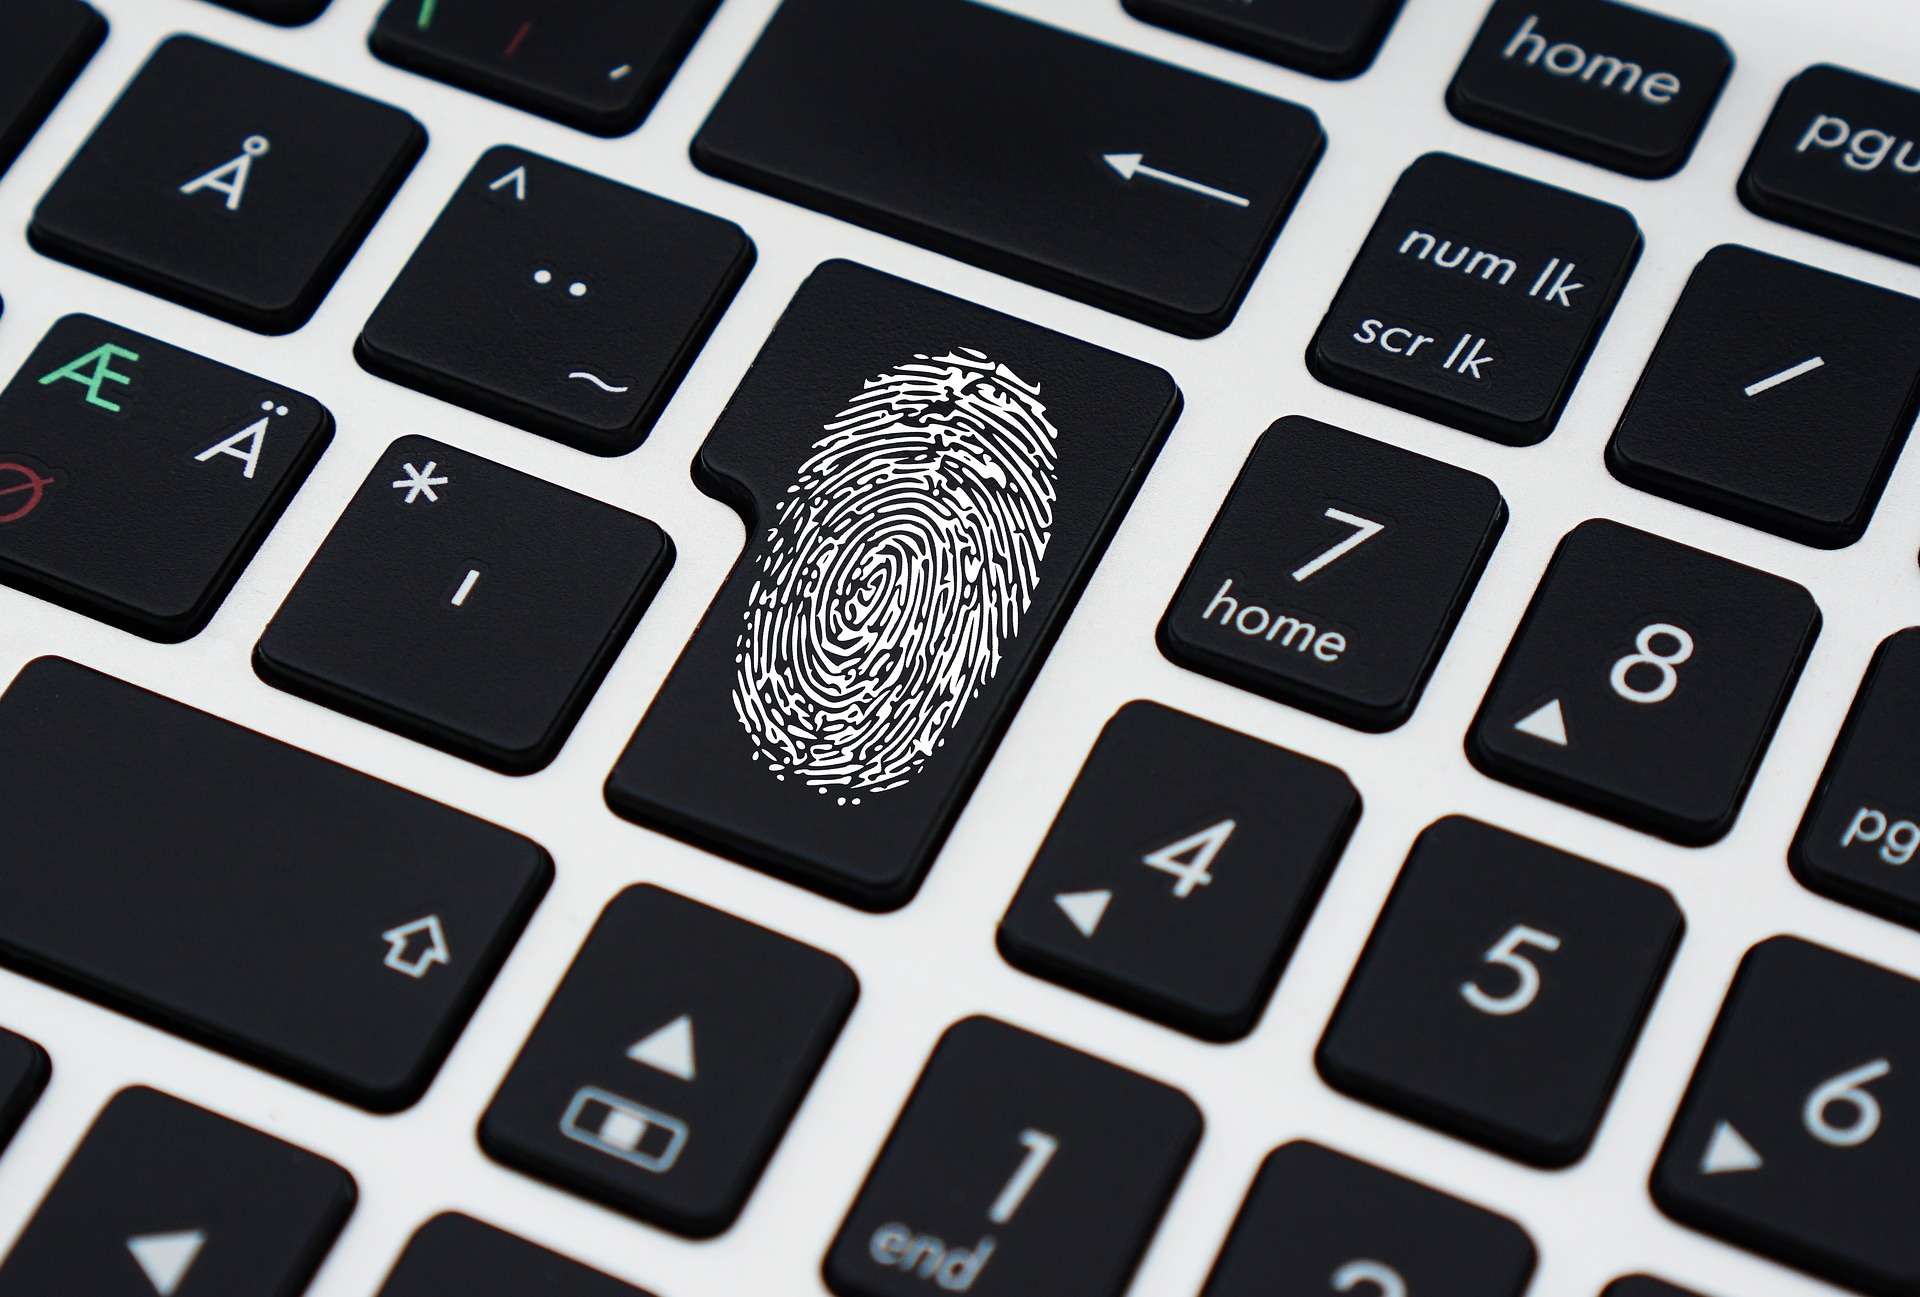 sicurezza un profilo aziendale collaborativo password impronta digitale